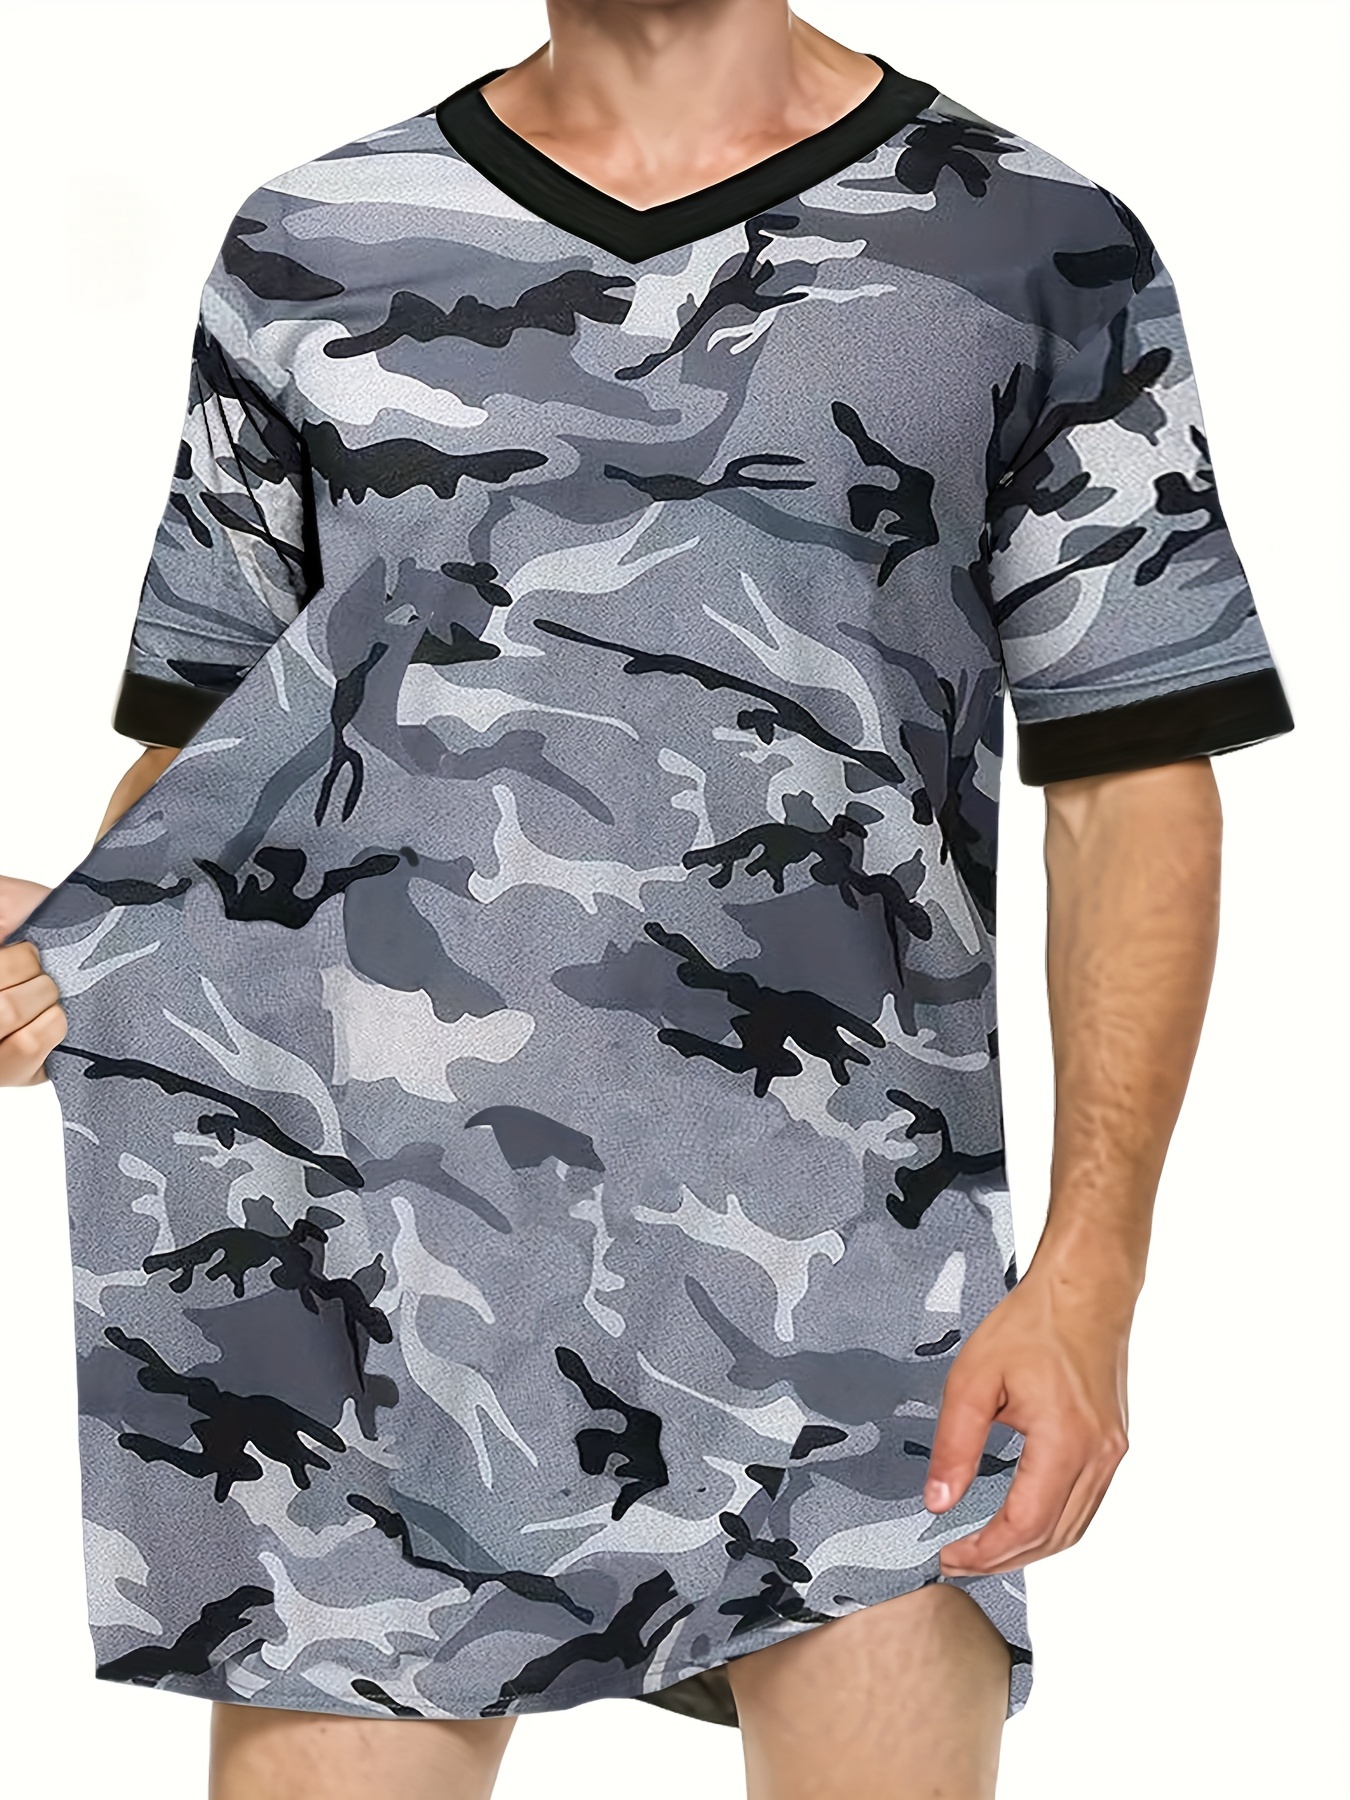 Ropa Militar Táctica De Camuflaje Para Hombre, Camiseta Ajustada De Manga  Larga